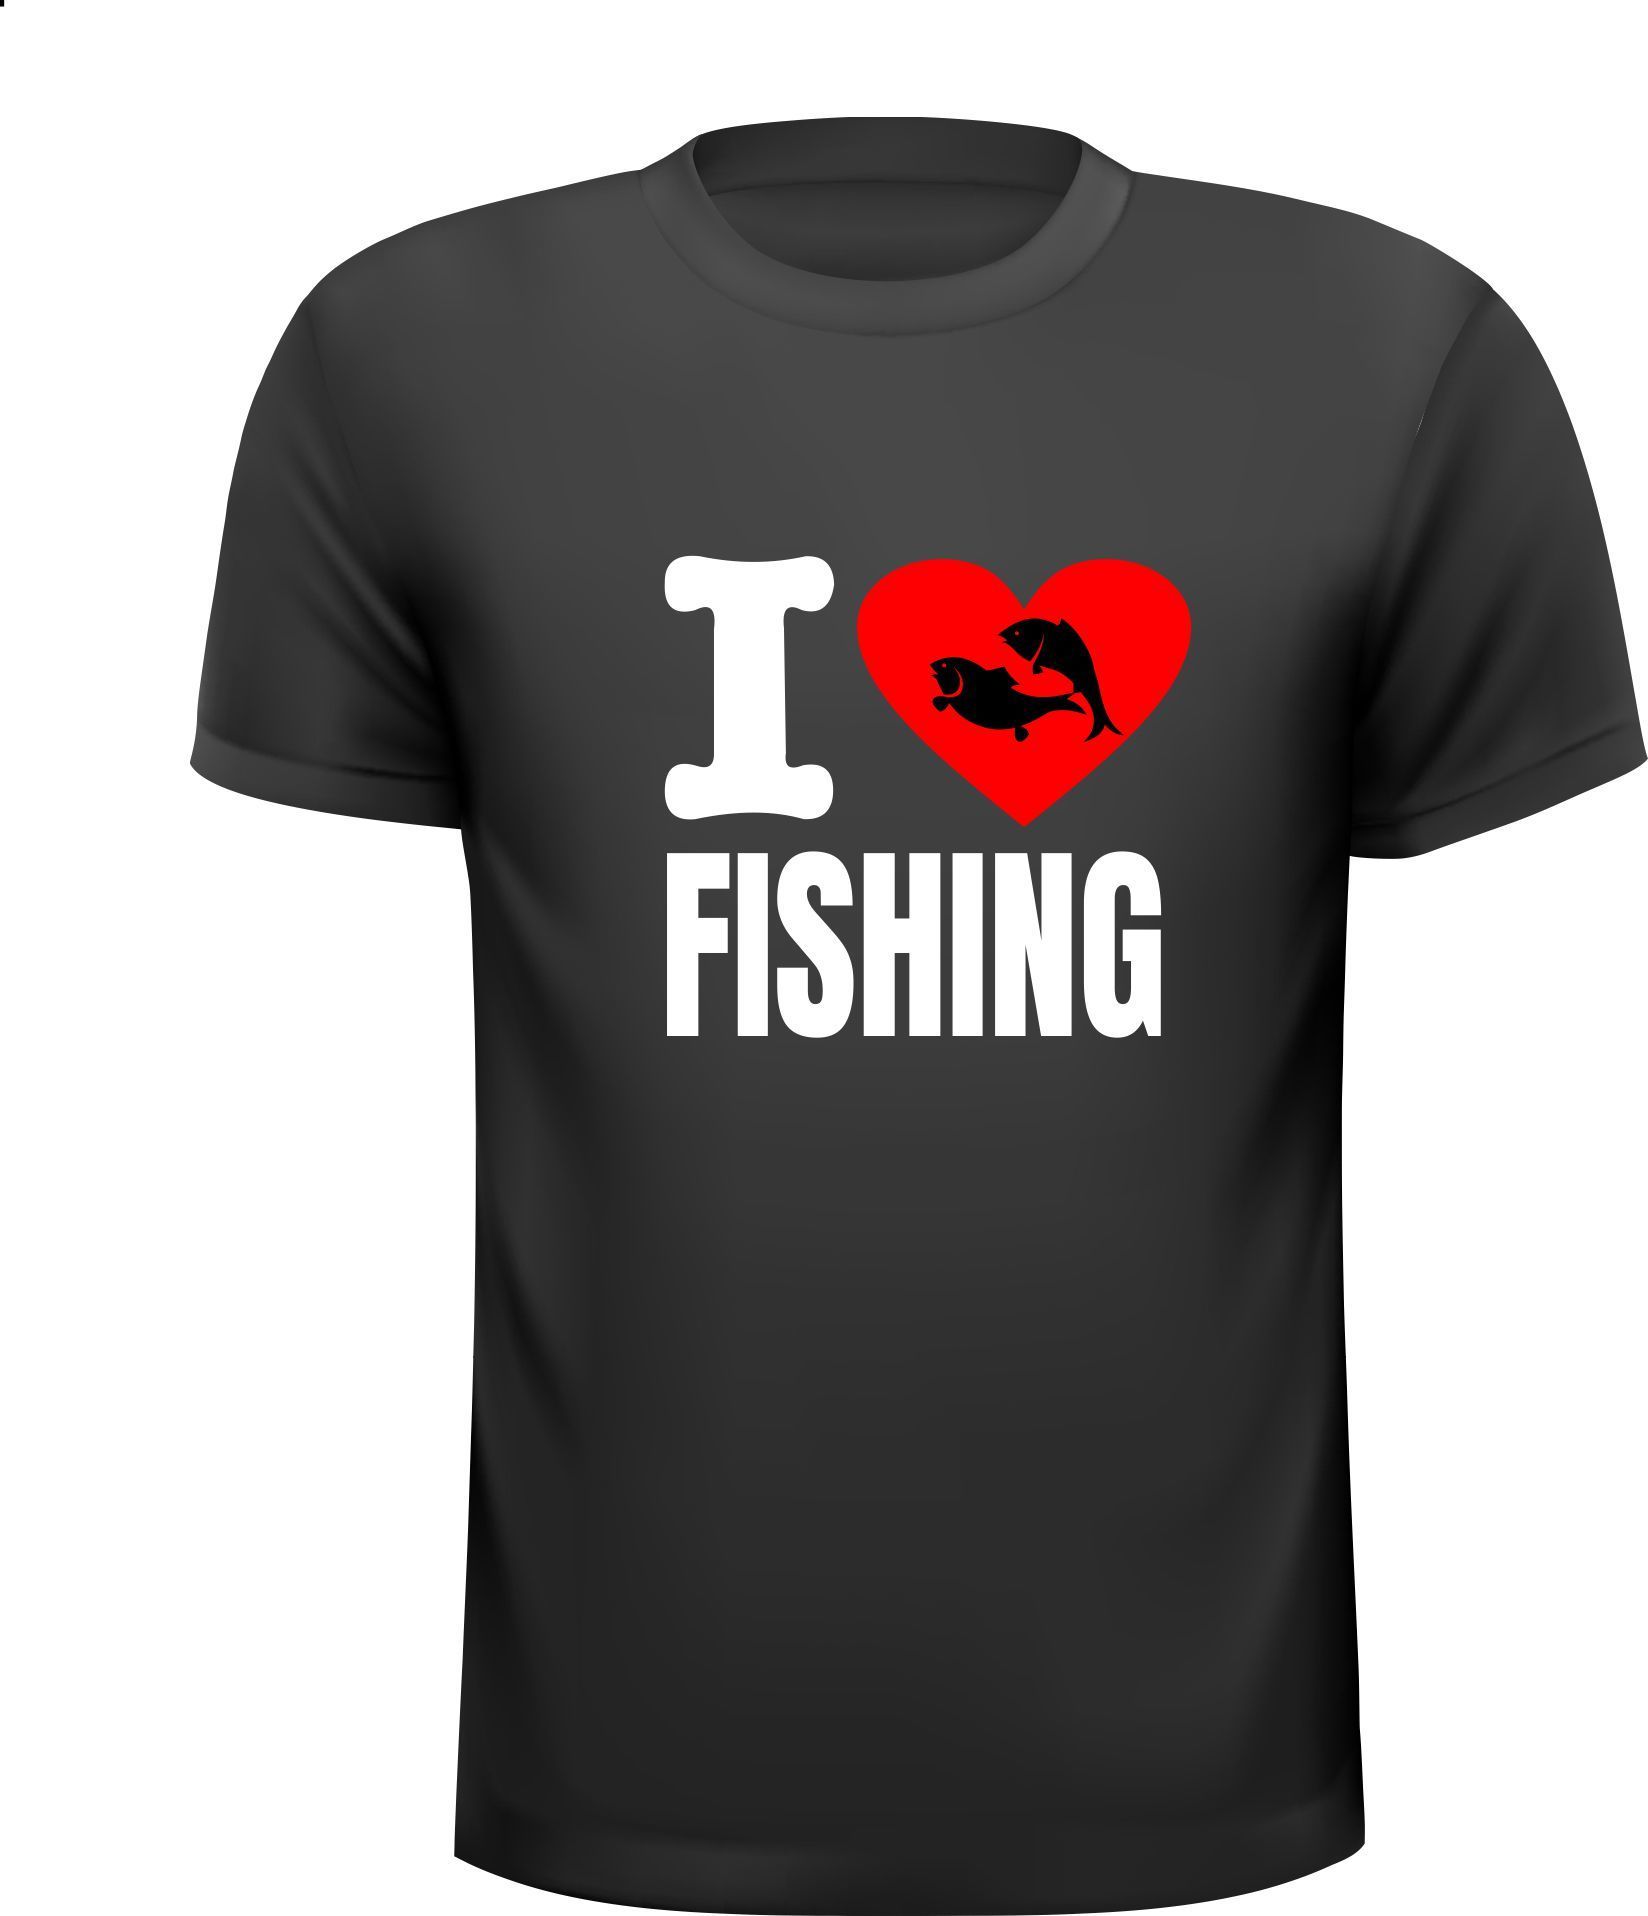 T-shirt i love fishing sportvisser vissers